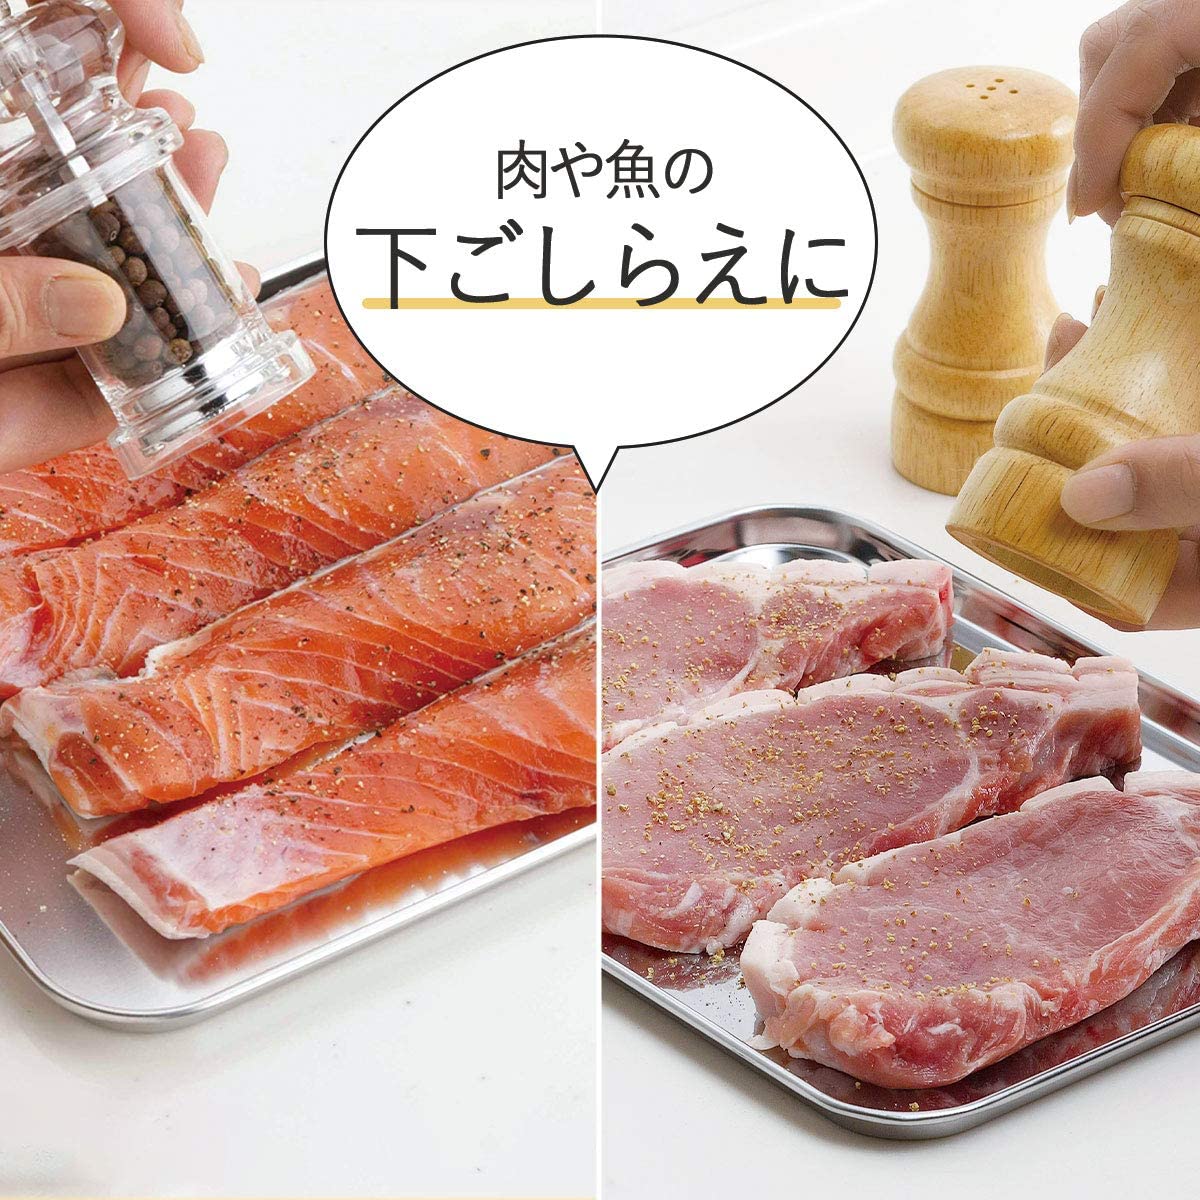 Khay đựng thực phẩm đa năng Echo Metal - Hàng nội địa Nhật Bản |#Made in Japan| |#nhập khẩu chính hãng|